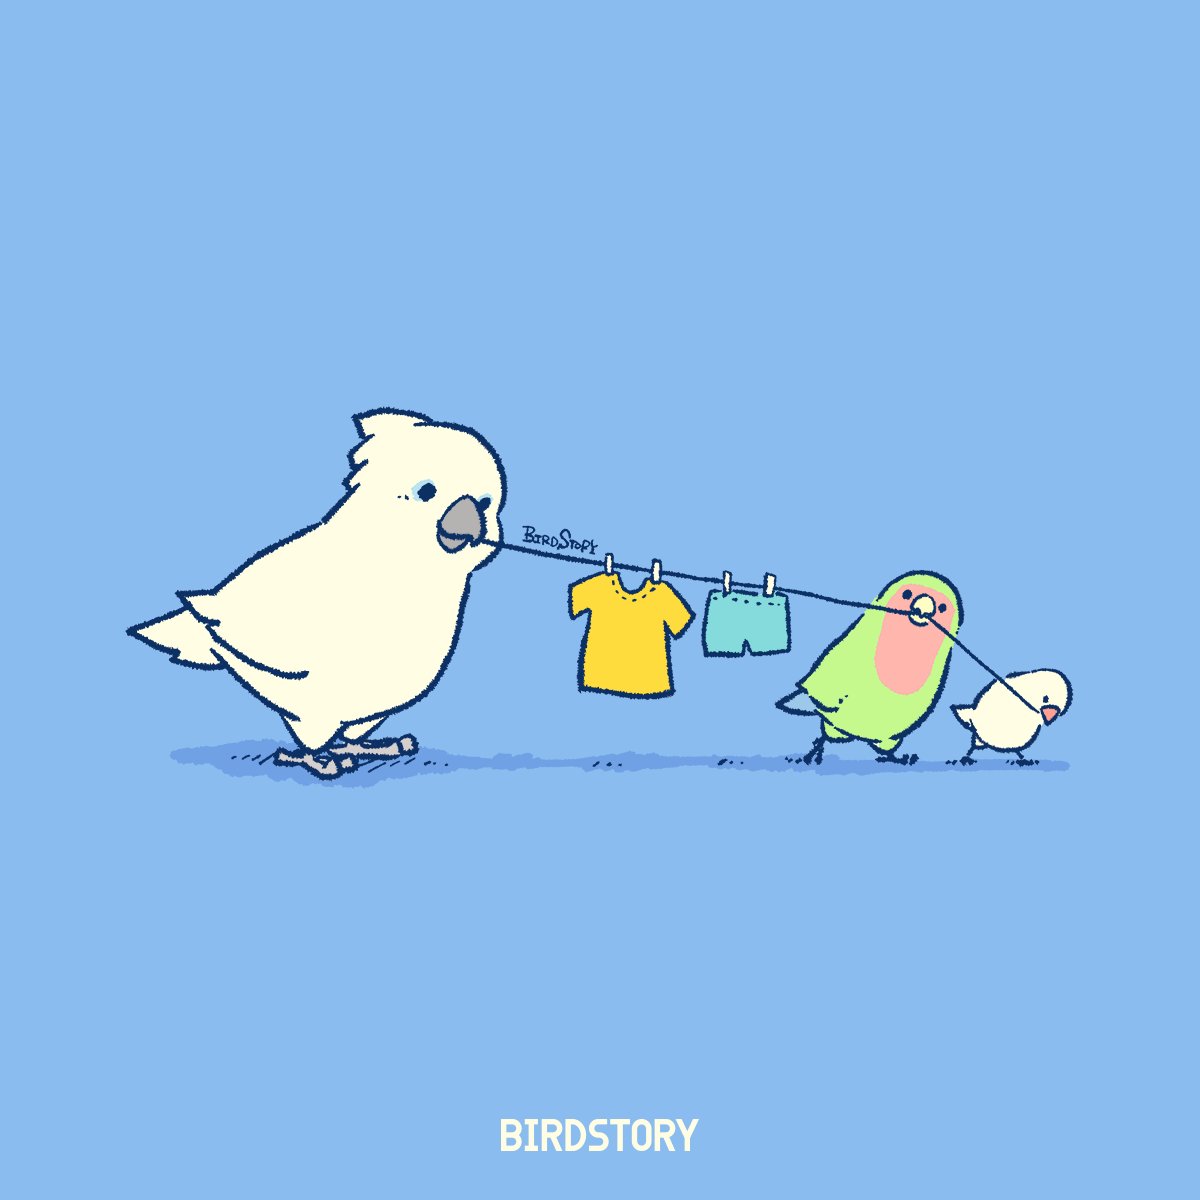 「おはようございます。本日は10月19日、洗濯を楽しむ日とのことです#BIRDST」|BIRDSTORYのイラスト